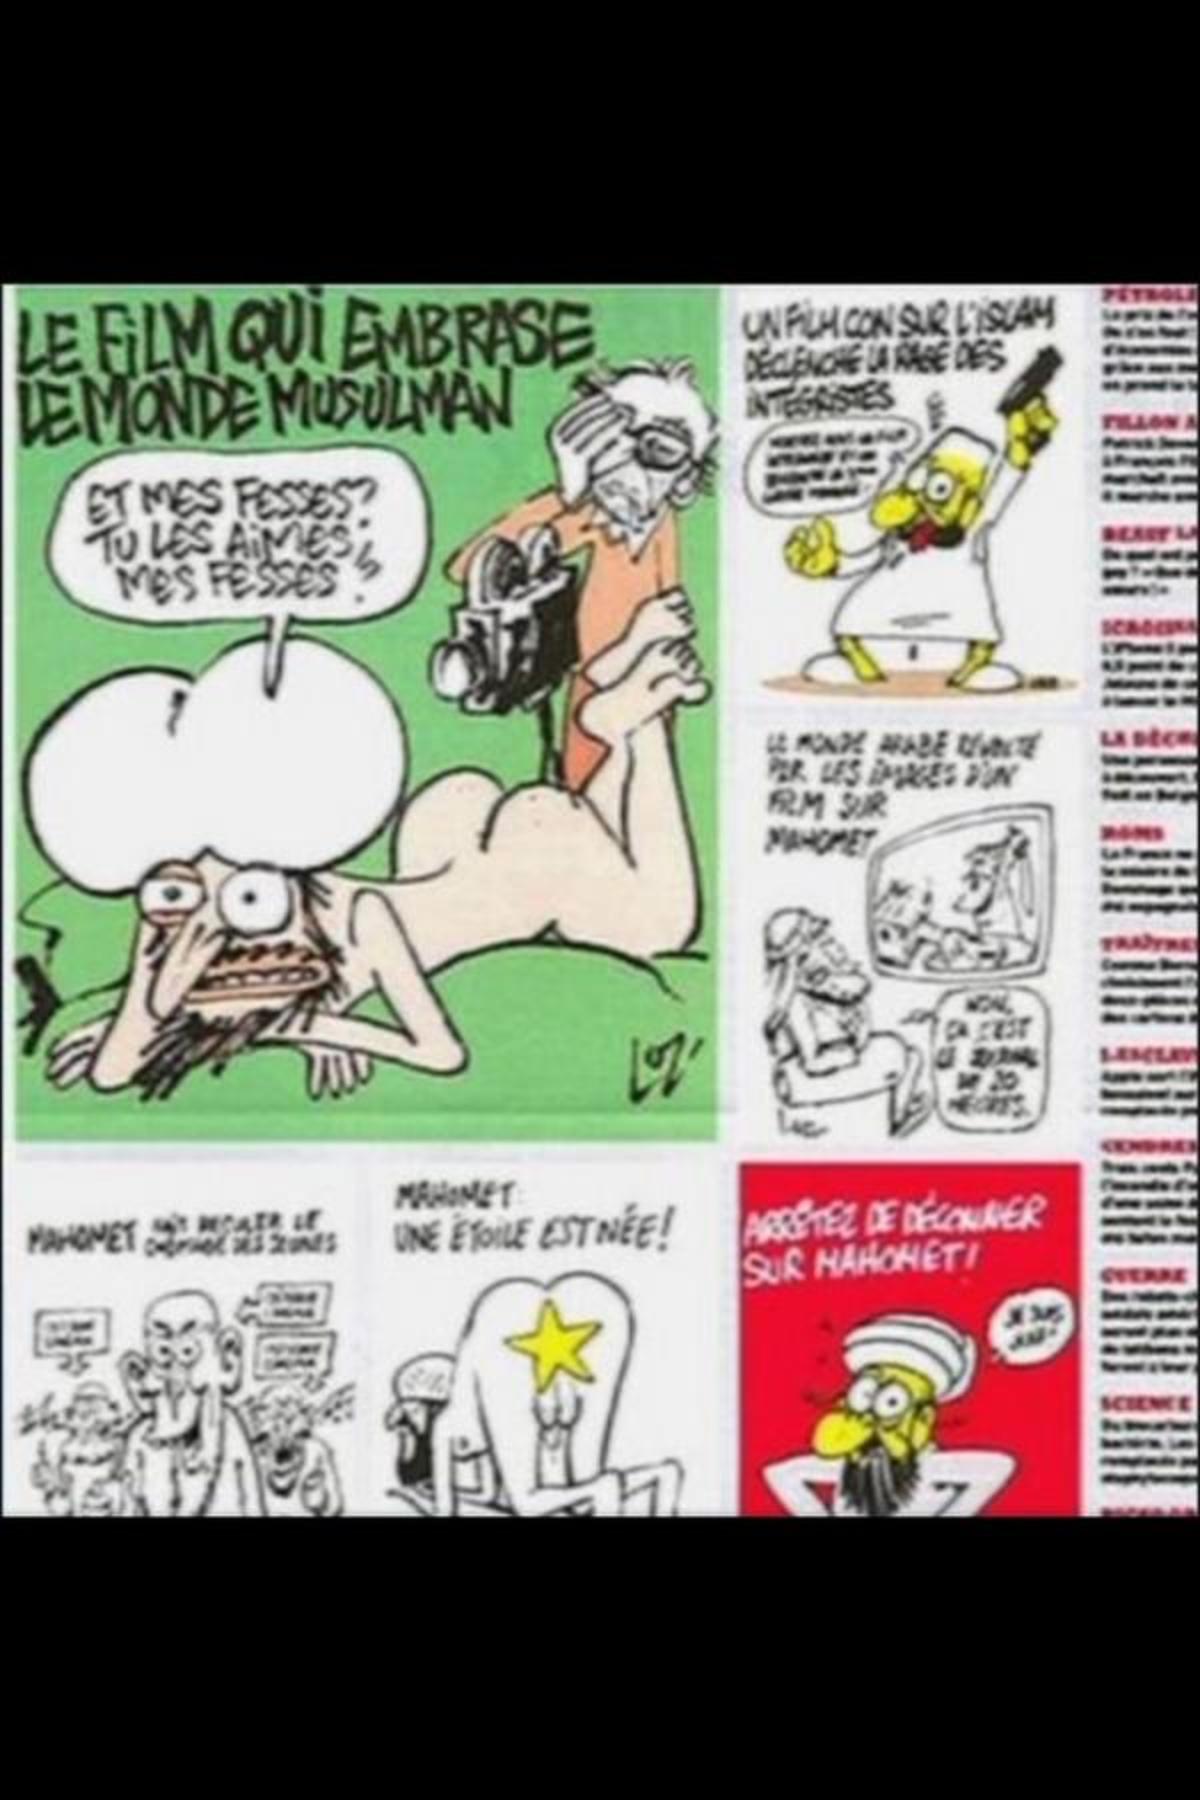 Κλείνει σχολεία και πρεσβείες σε 20 μουσουλμανικές χώρες την Παρασκευή η Γαλλία – Δημοσιεύτηκαν οι καρικατούρες του Μωάμεθ στο περιοδικό Charlie Hebdo